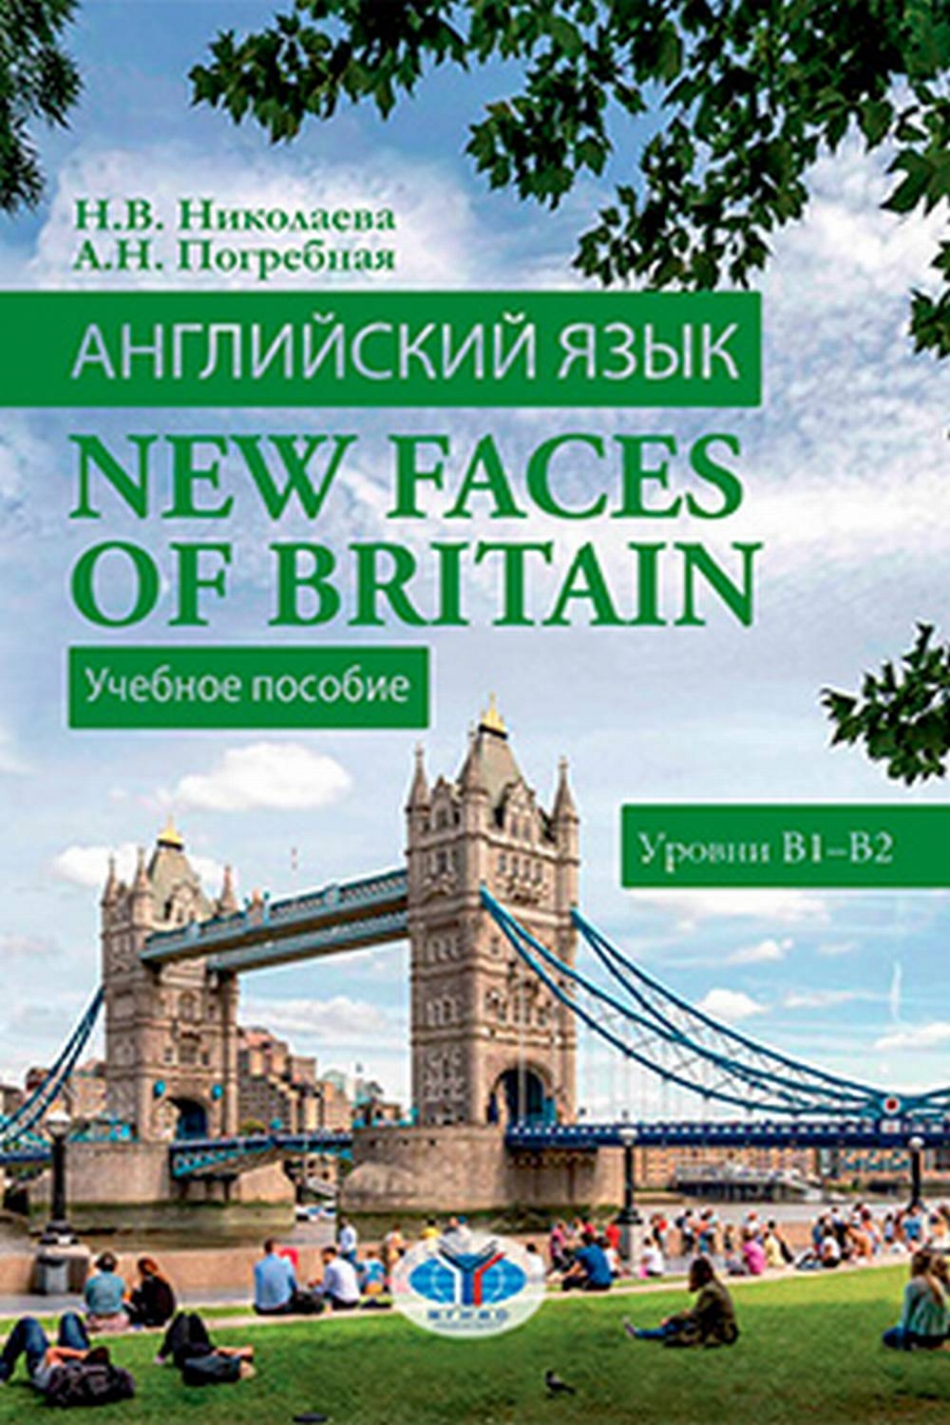 Николаева Н.В., Погребная А.Н. Английский язык. New Faces of Britain. Уровни В1-В2 